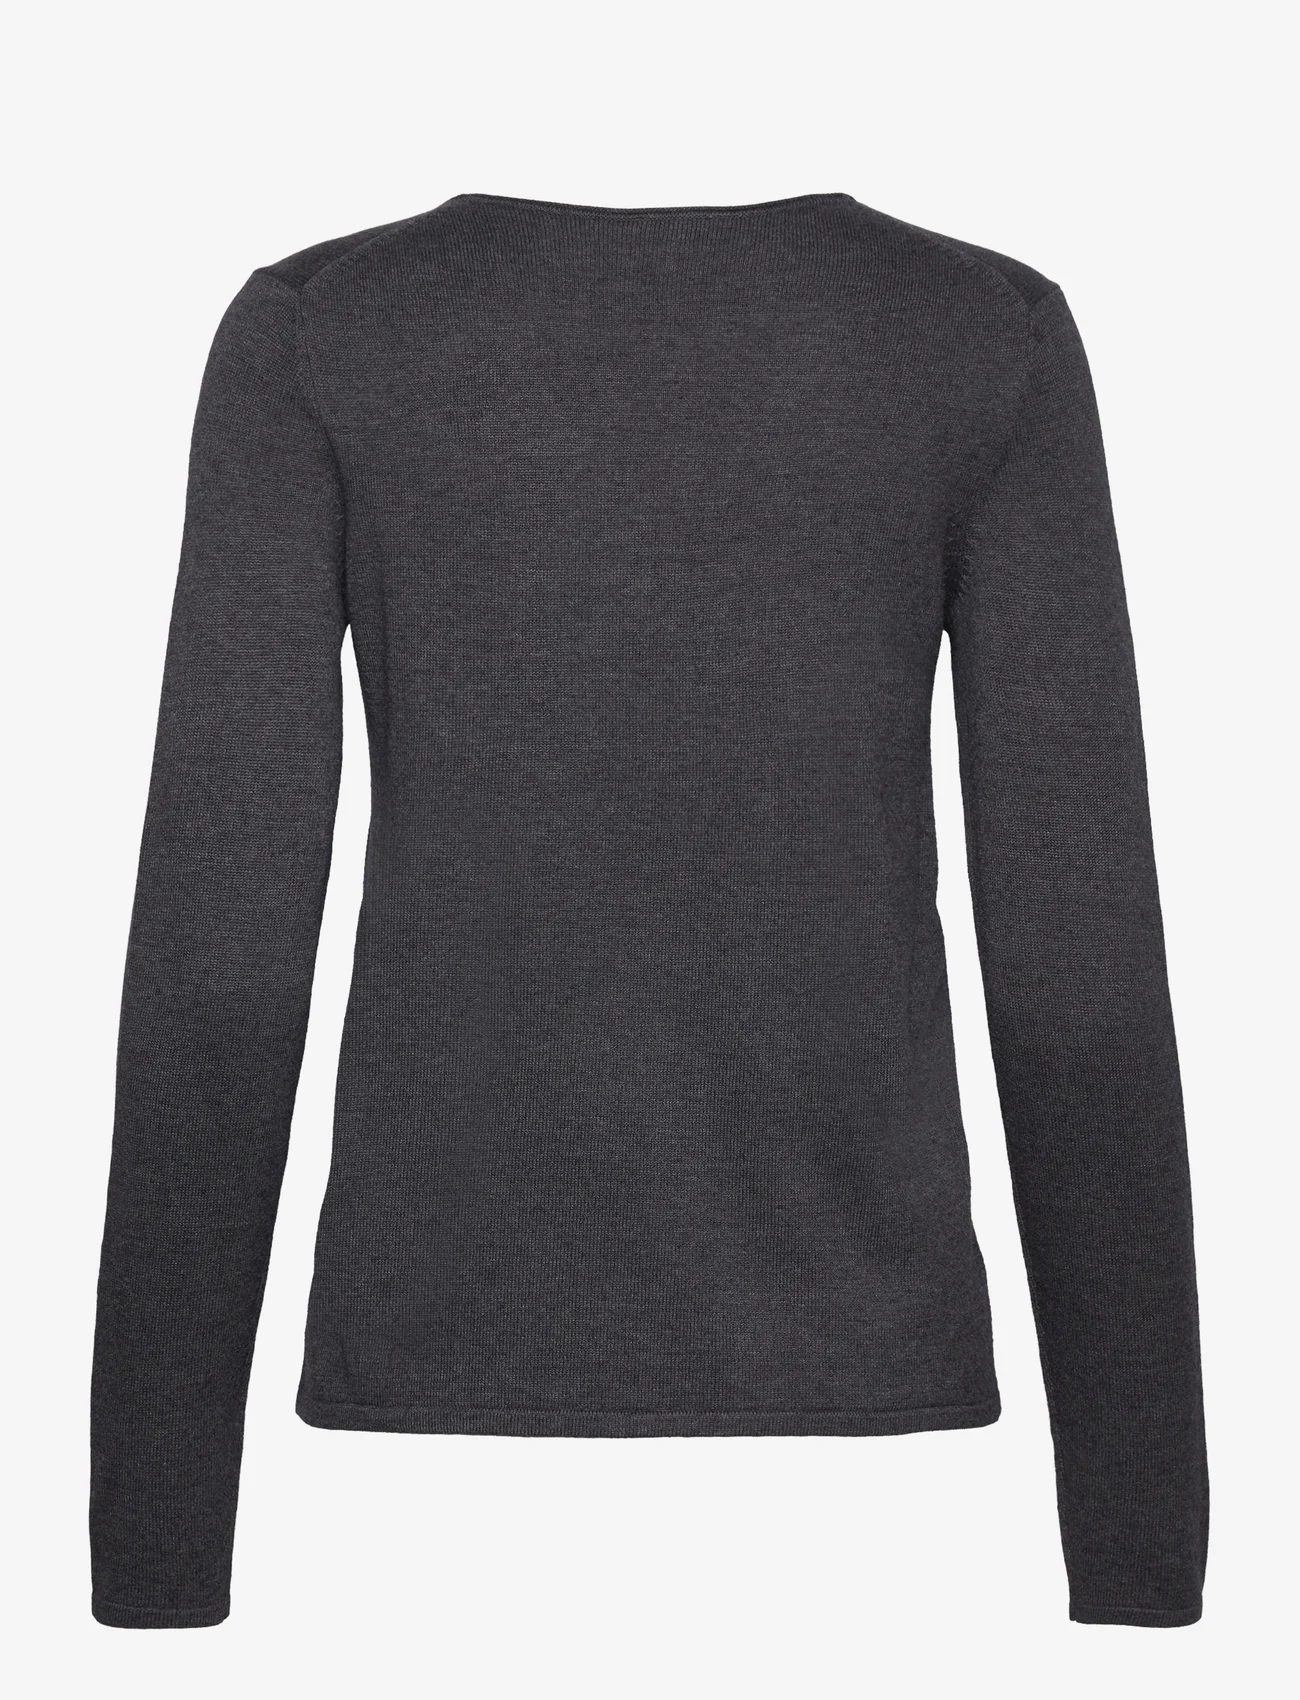 Tom Tailor - sweater basic v-neck - laveste priser - evident anthracite melange - 1